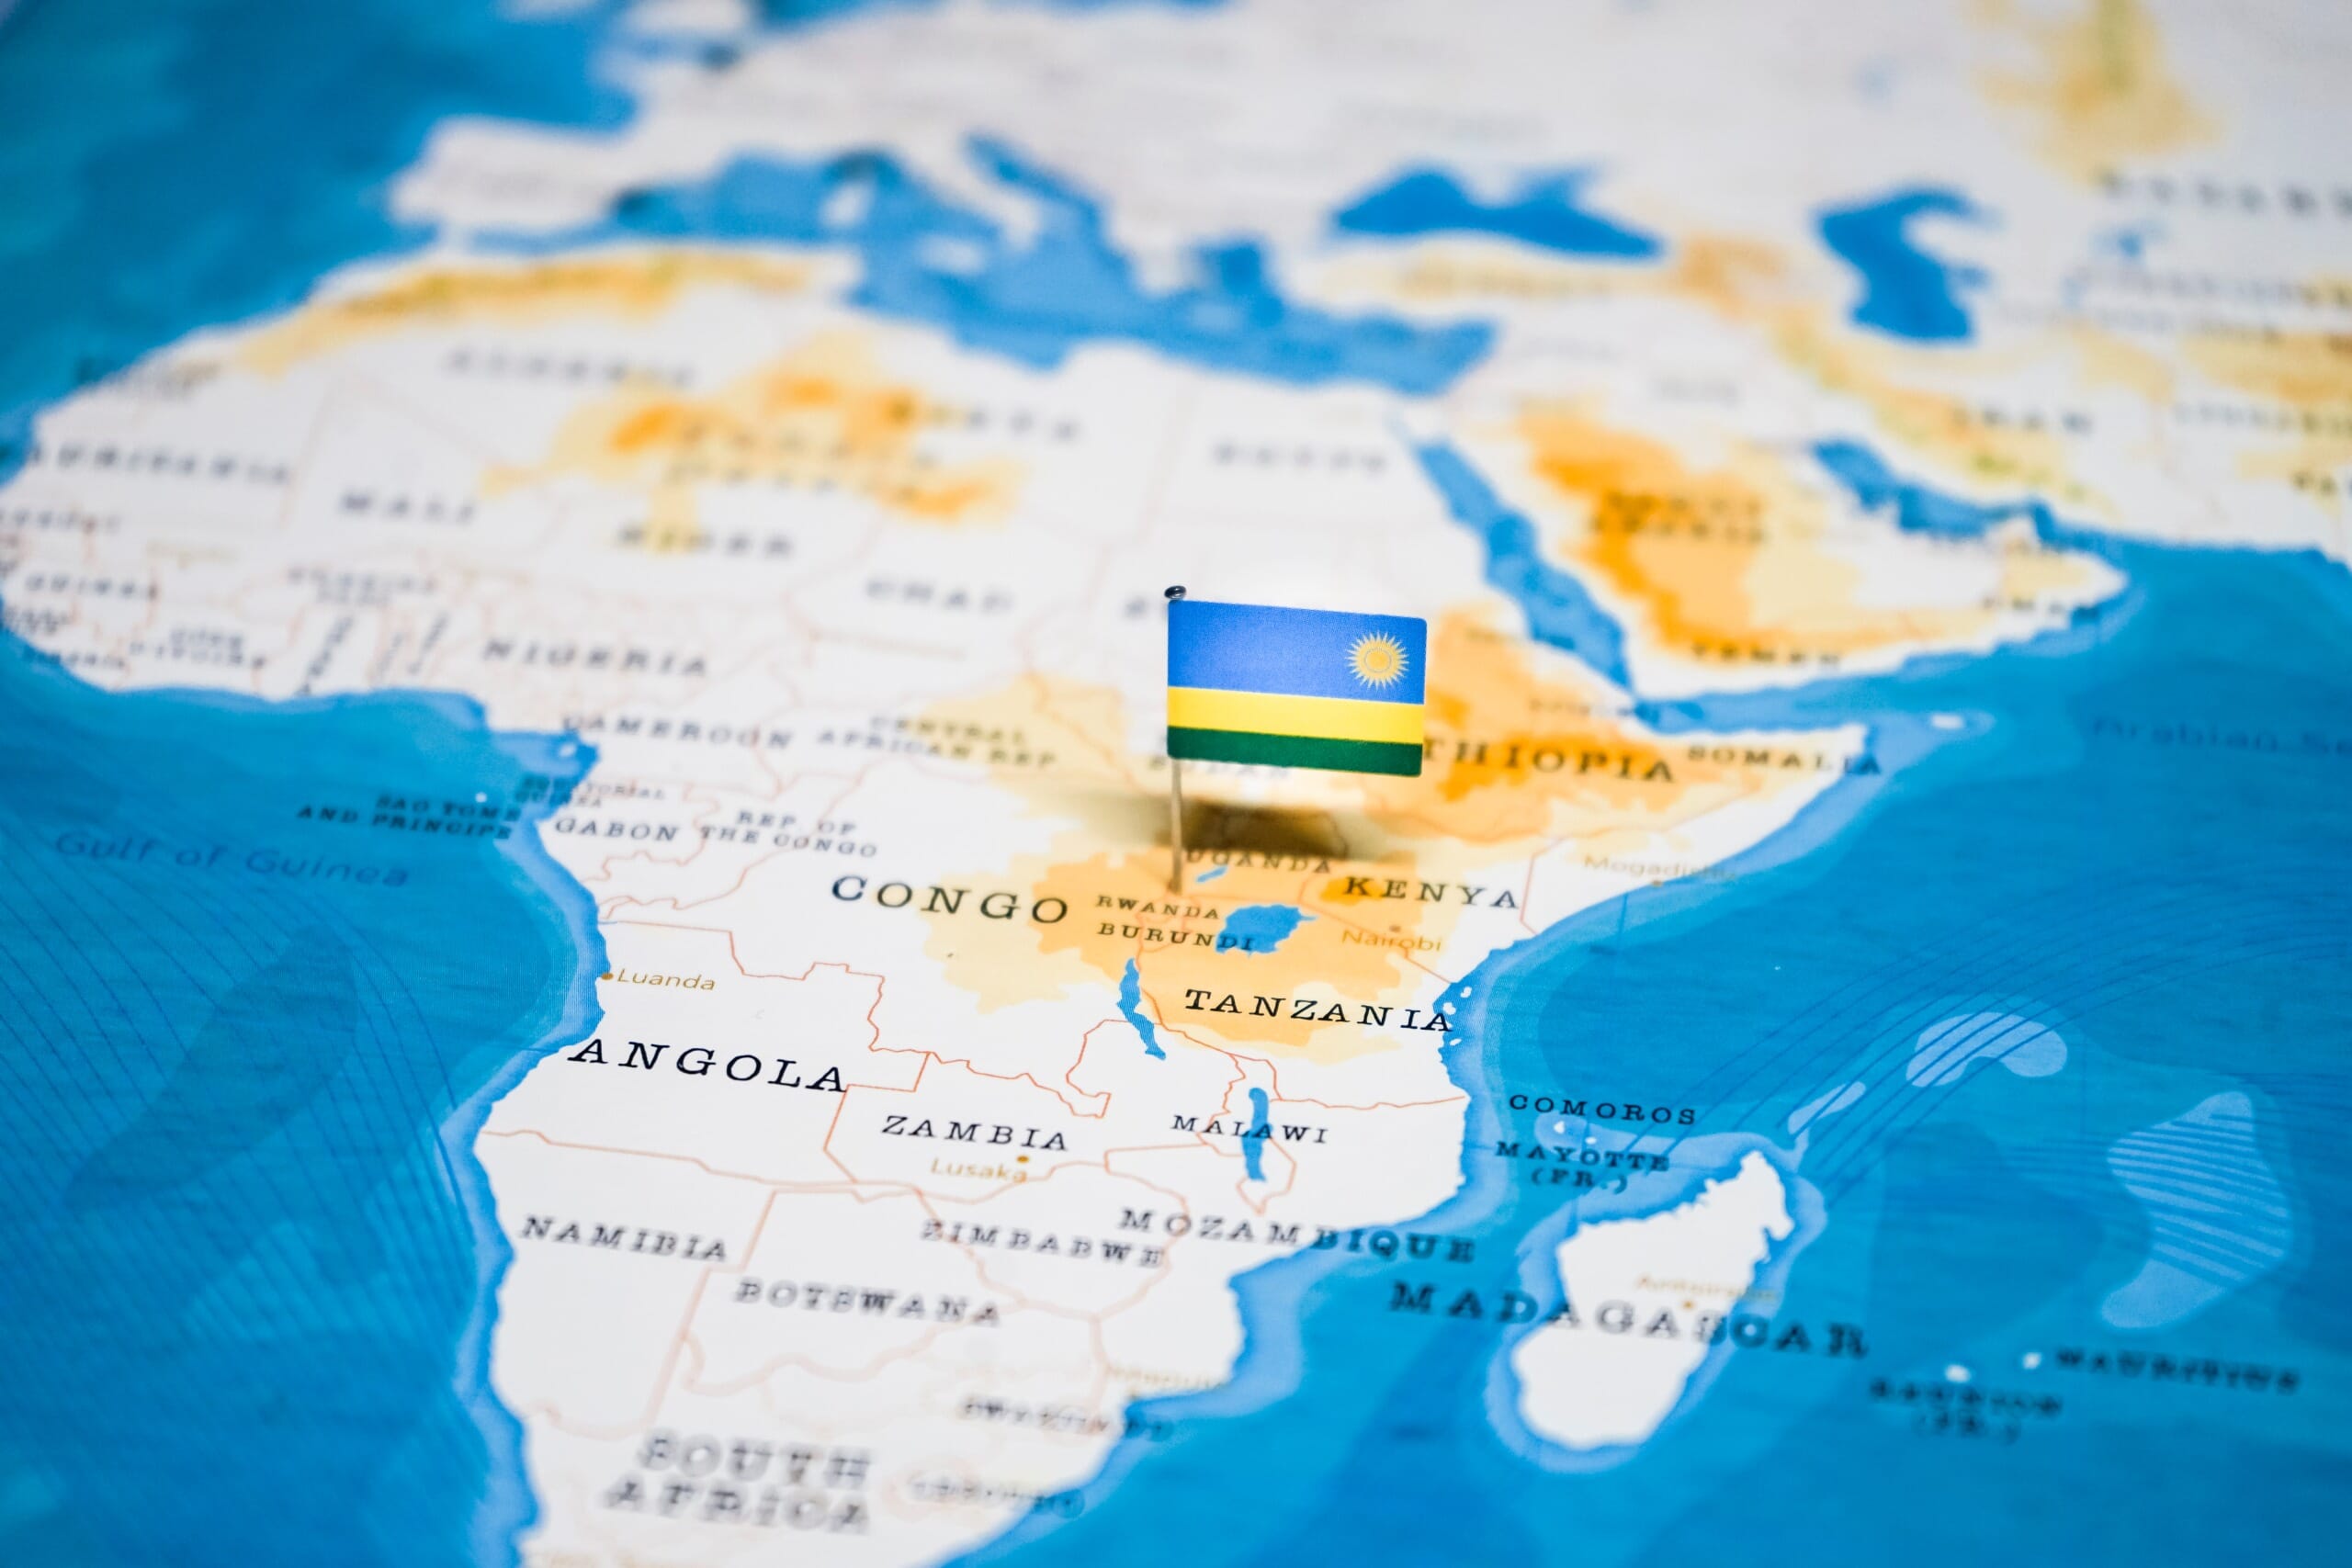 World Map Rwanda Share Map - vrogue.co